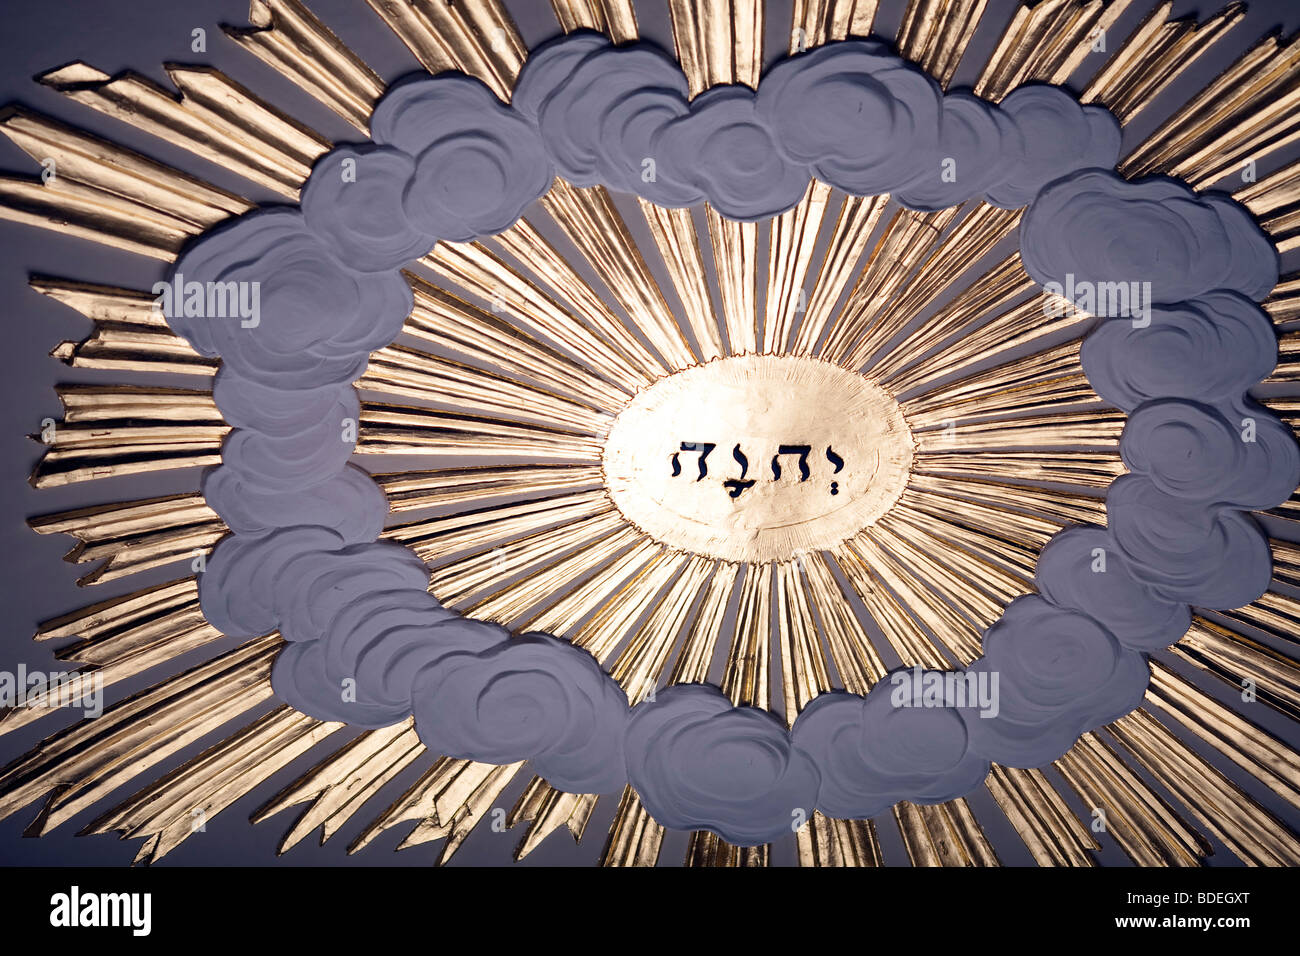 Das hebräische Wort bedeutet "Gott" an der Decke des Saint-Martin in den Bereichen Kirche, London, England, Vereinigtes Königreich Stockfoto